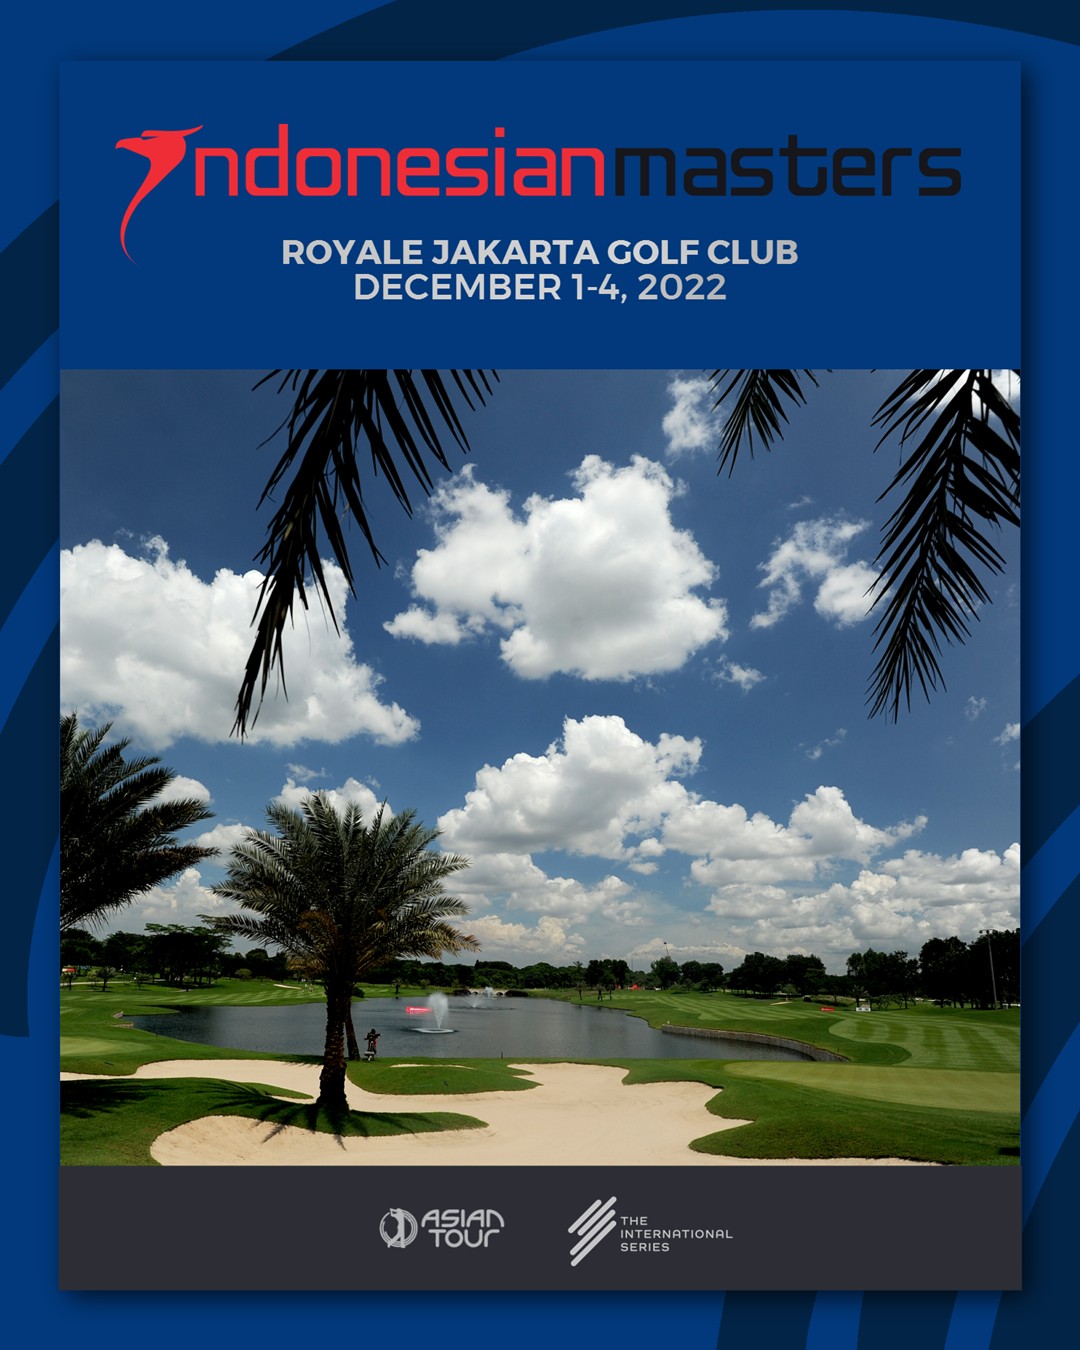 ดูบอล: Asian Tour Indonesian Masters 2022